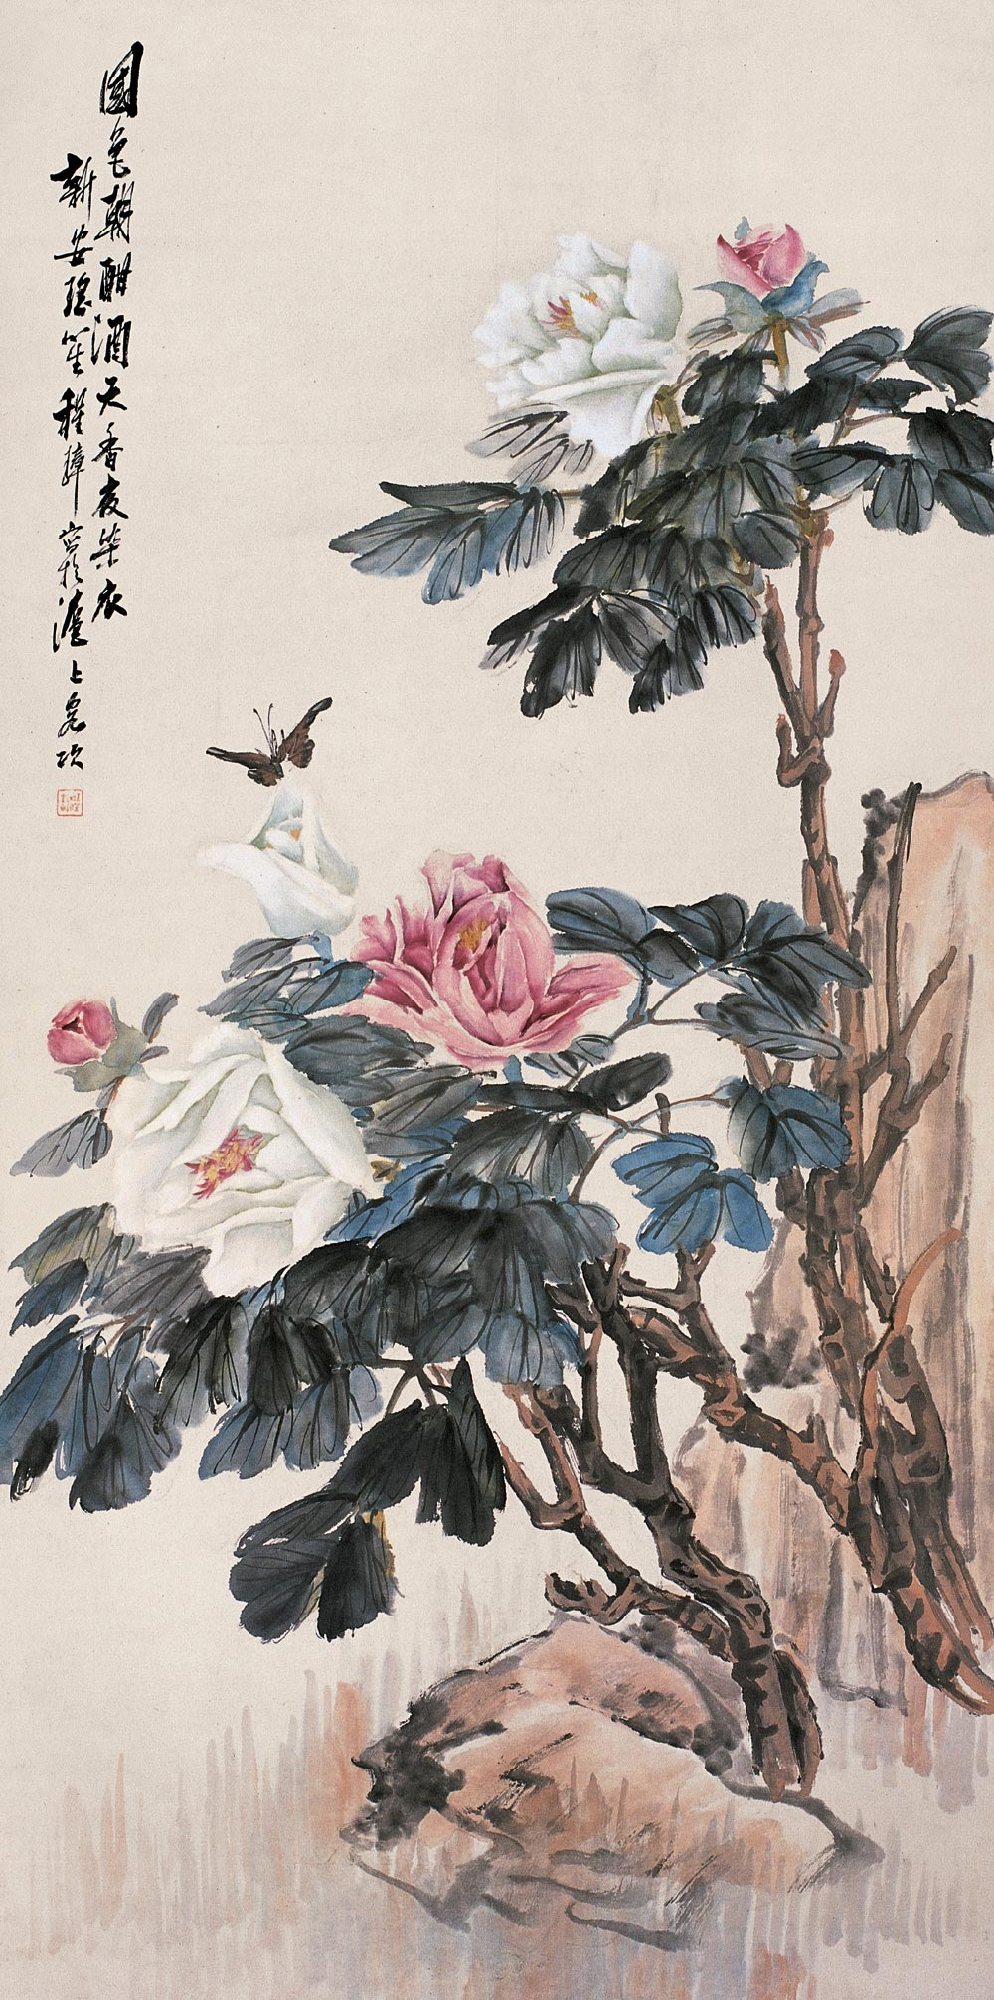 半額購入 中国 工芸品 書画 掛軸 清・程璋「雙猫窺魚圖」 故宮博物院 